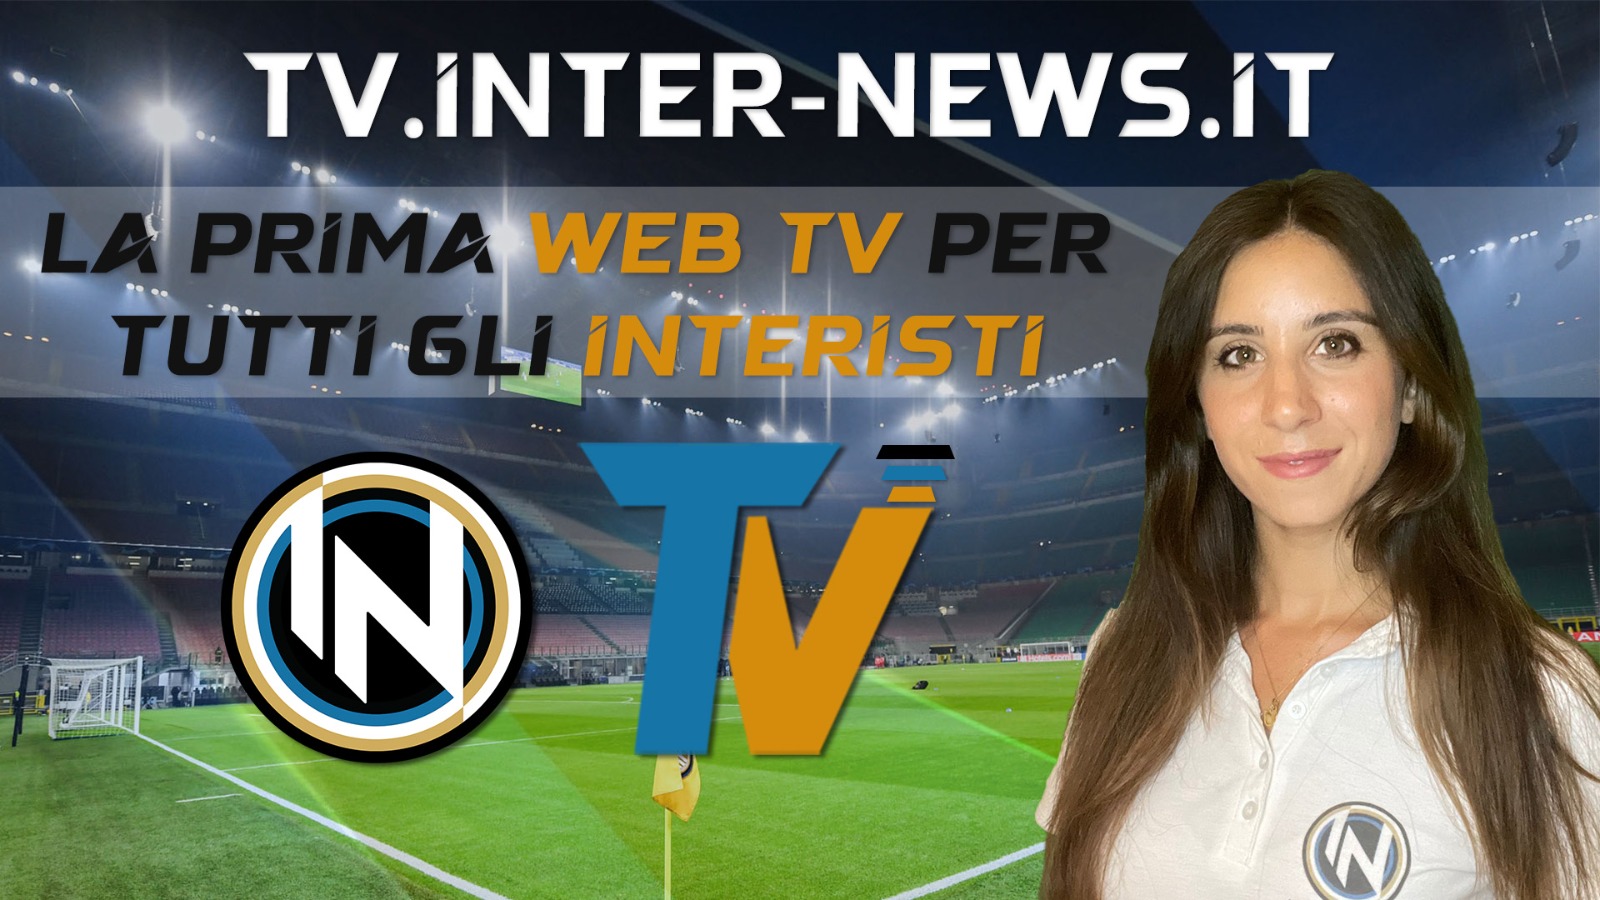 Inter-News TV, prima WEB TV crossmediale gratuita per i tifosi!